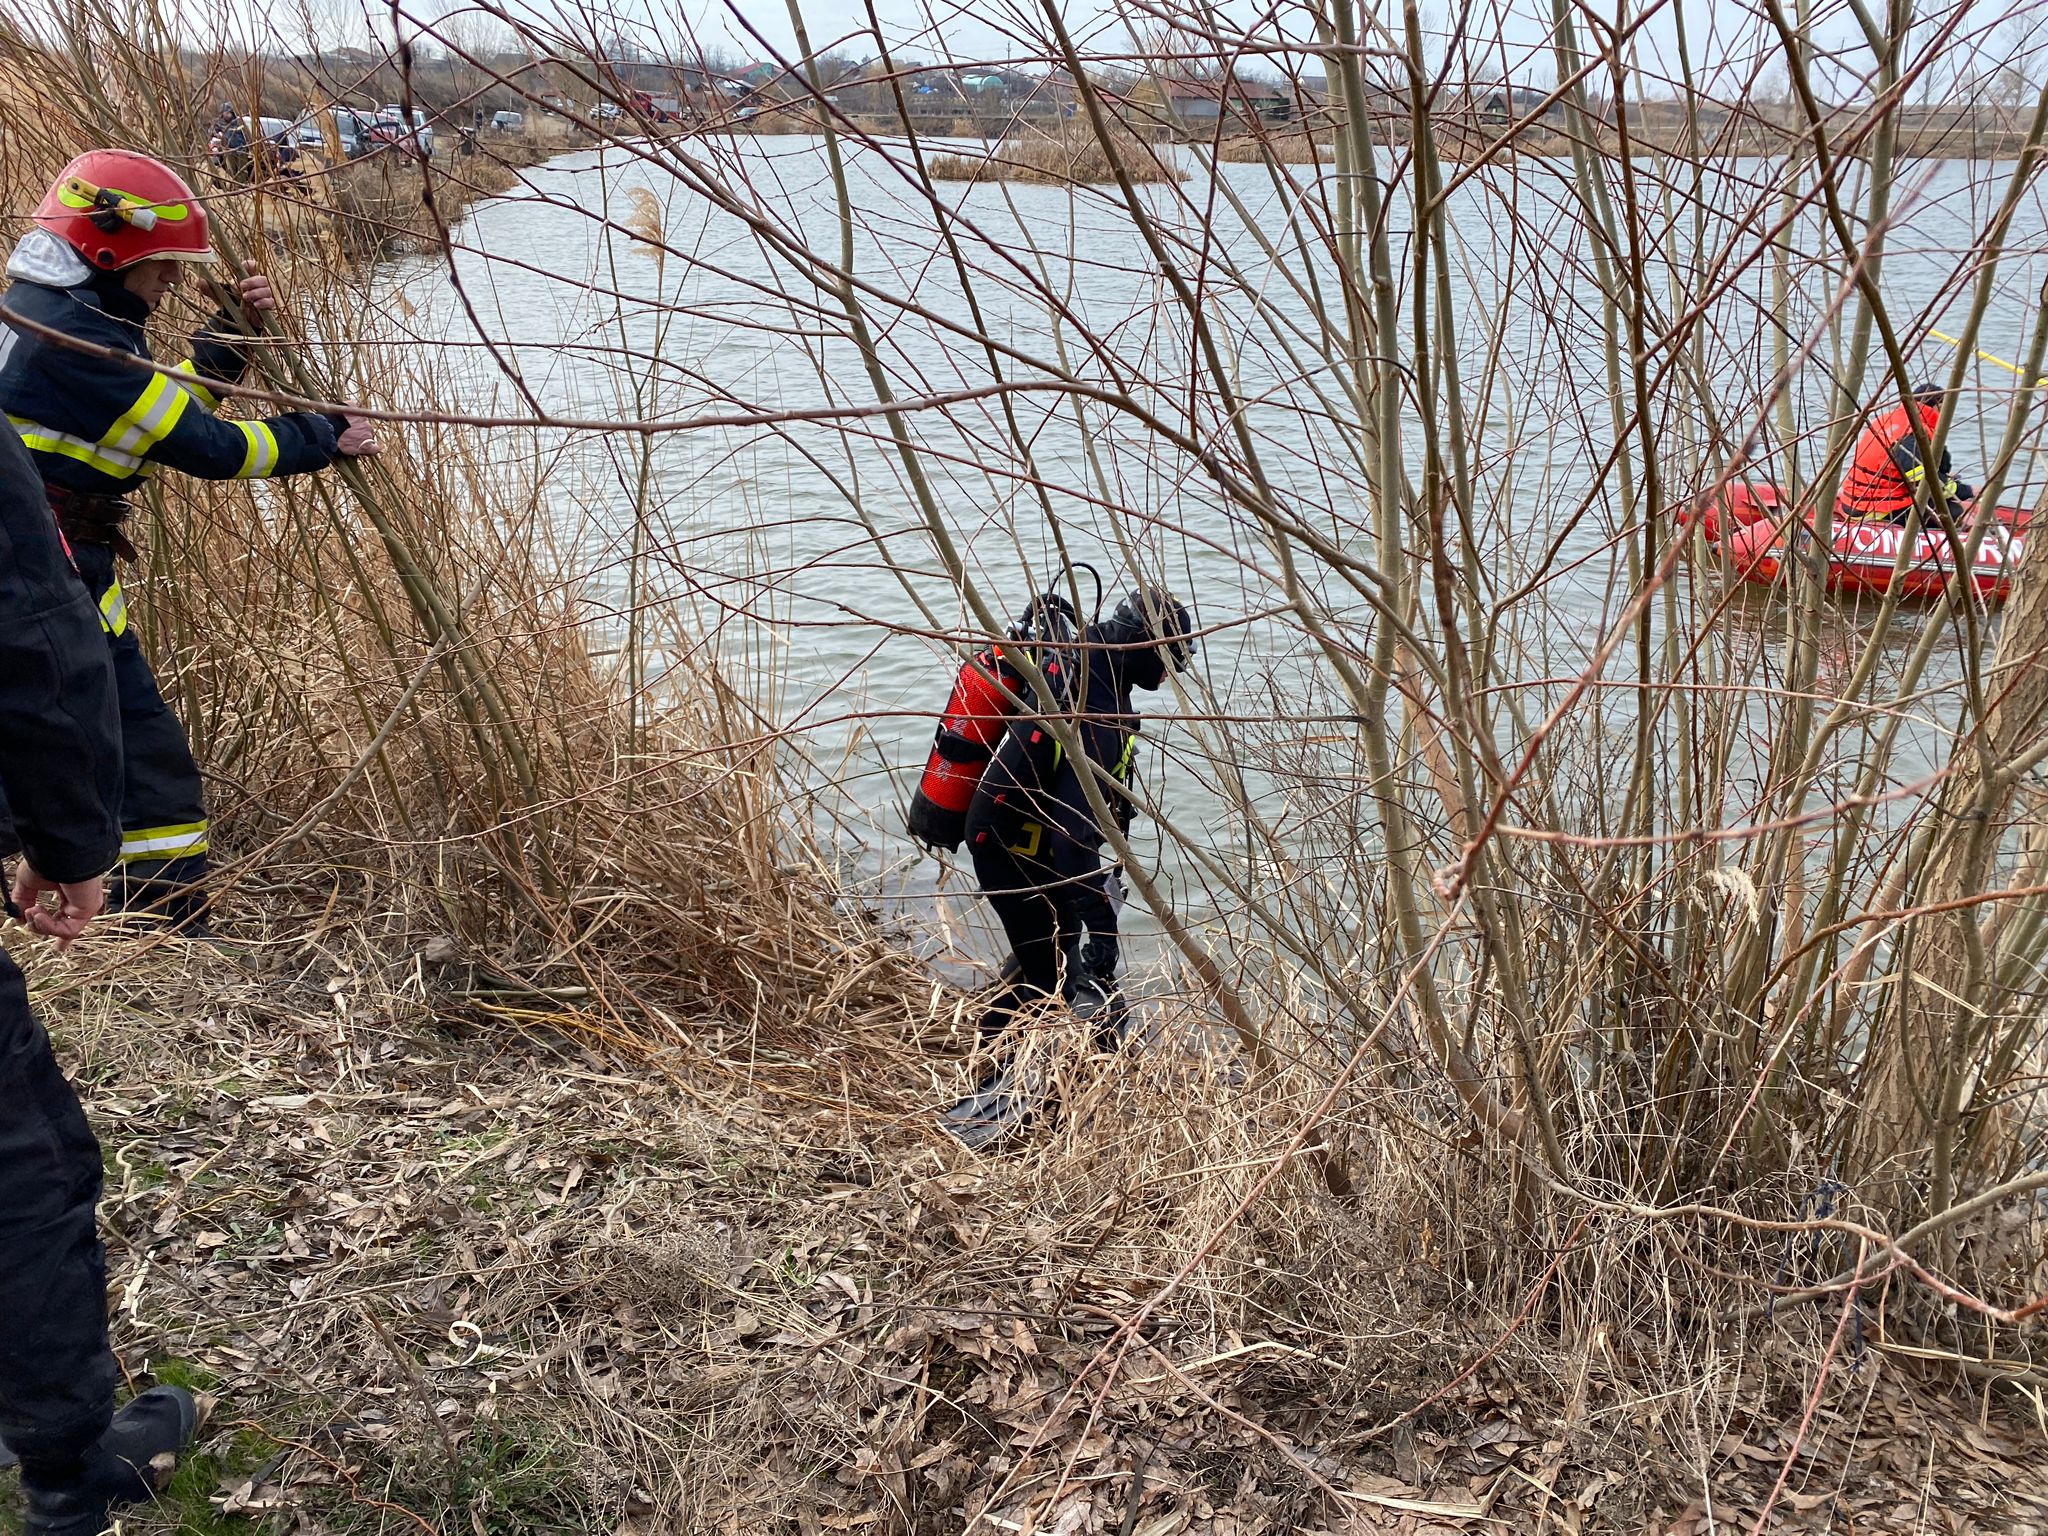 Pompierii dâmbovițeni au fost solicitați să intervină raza localității Visina, în cazul unei persoane înecate. 